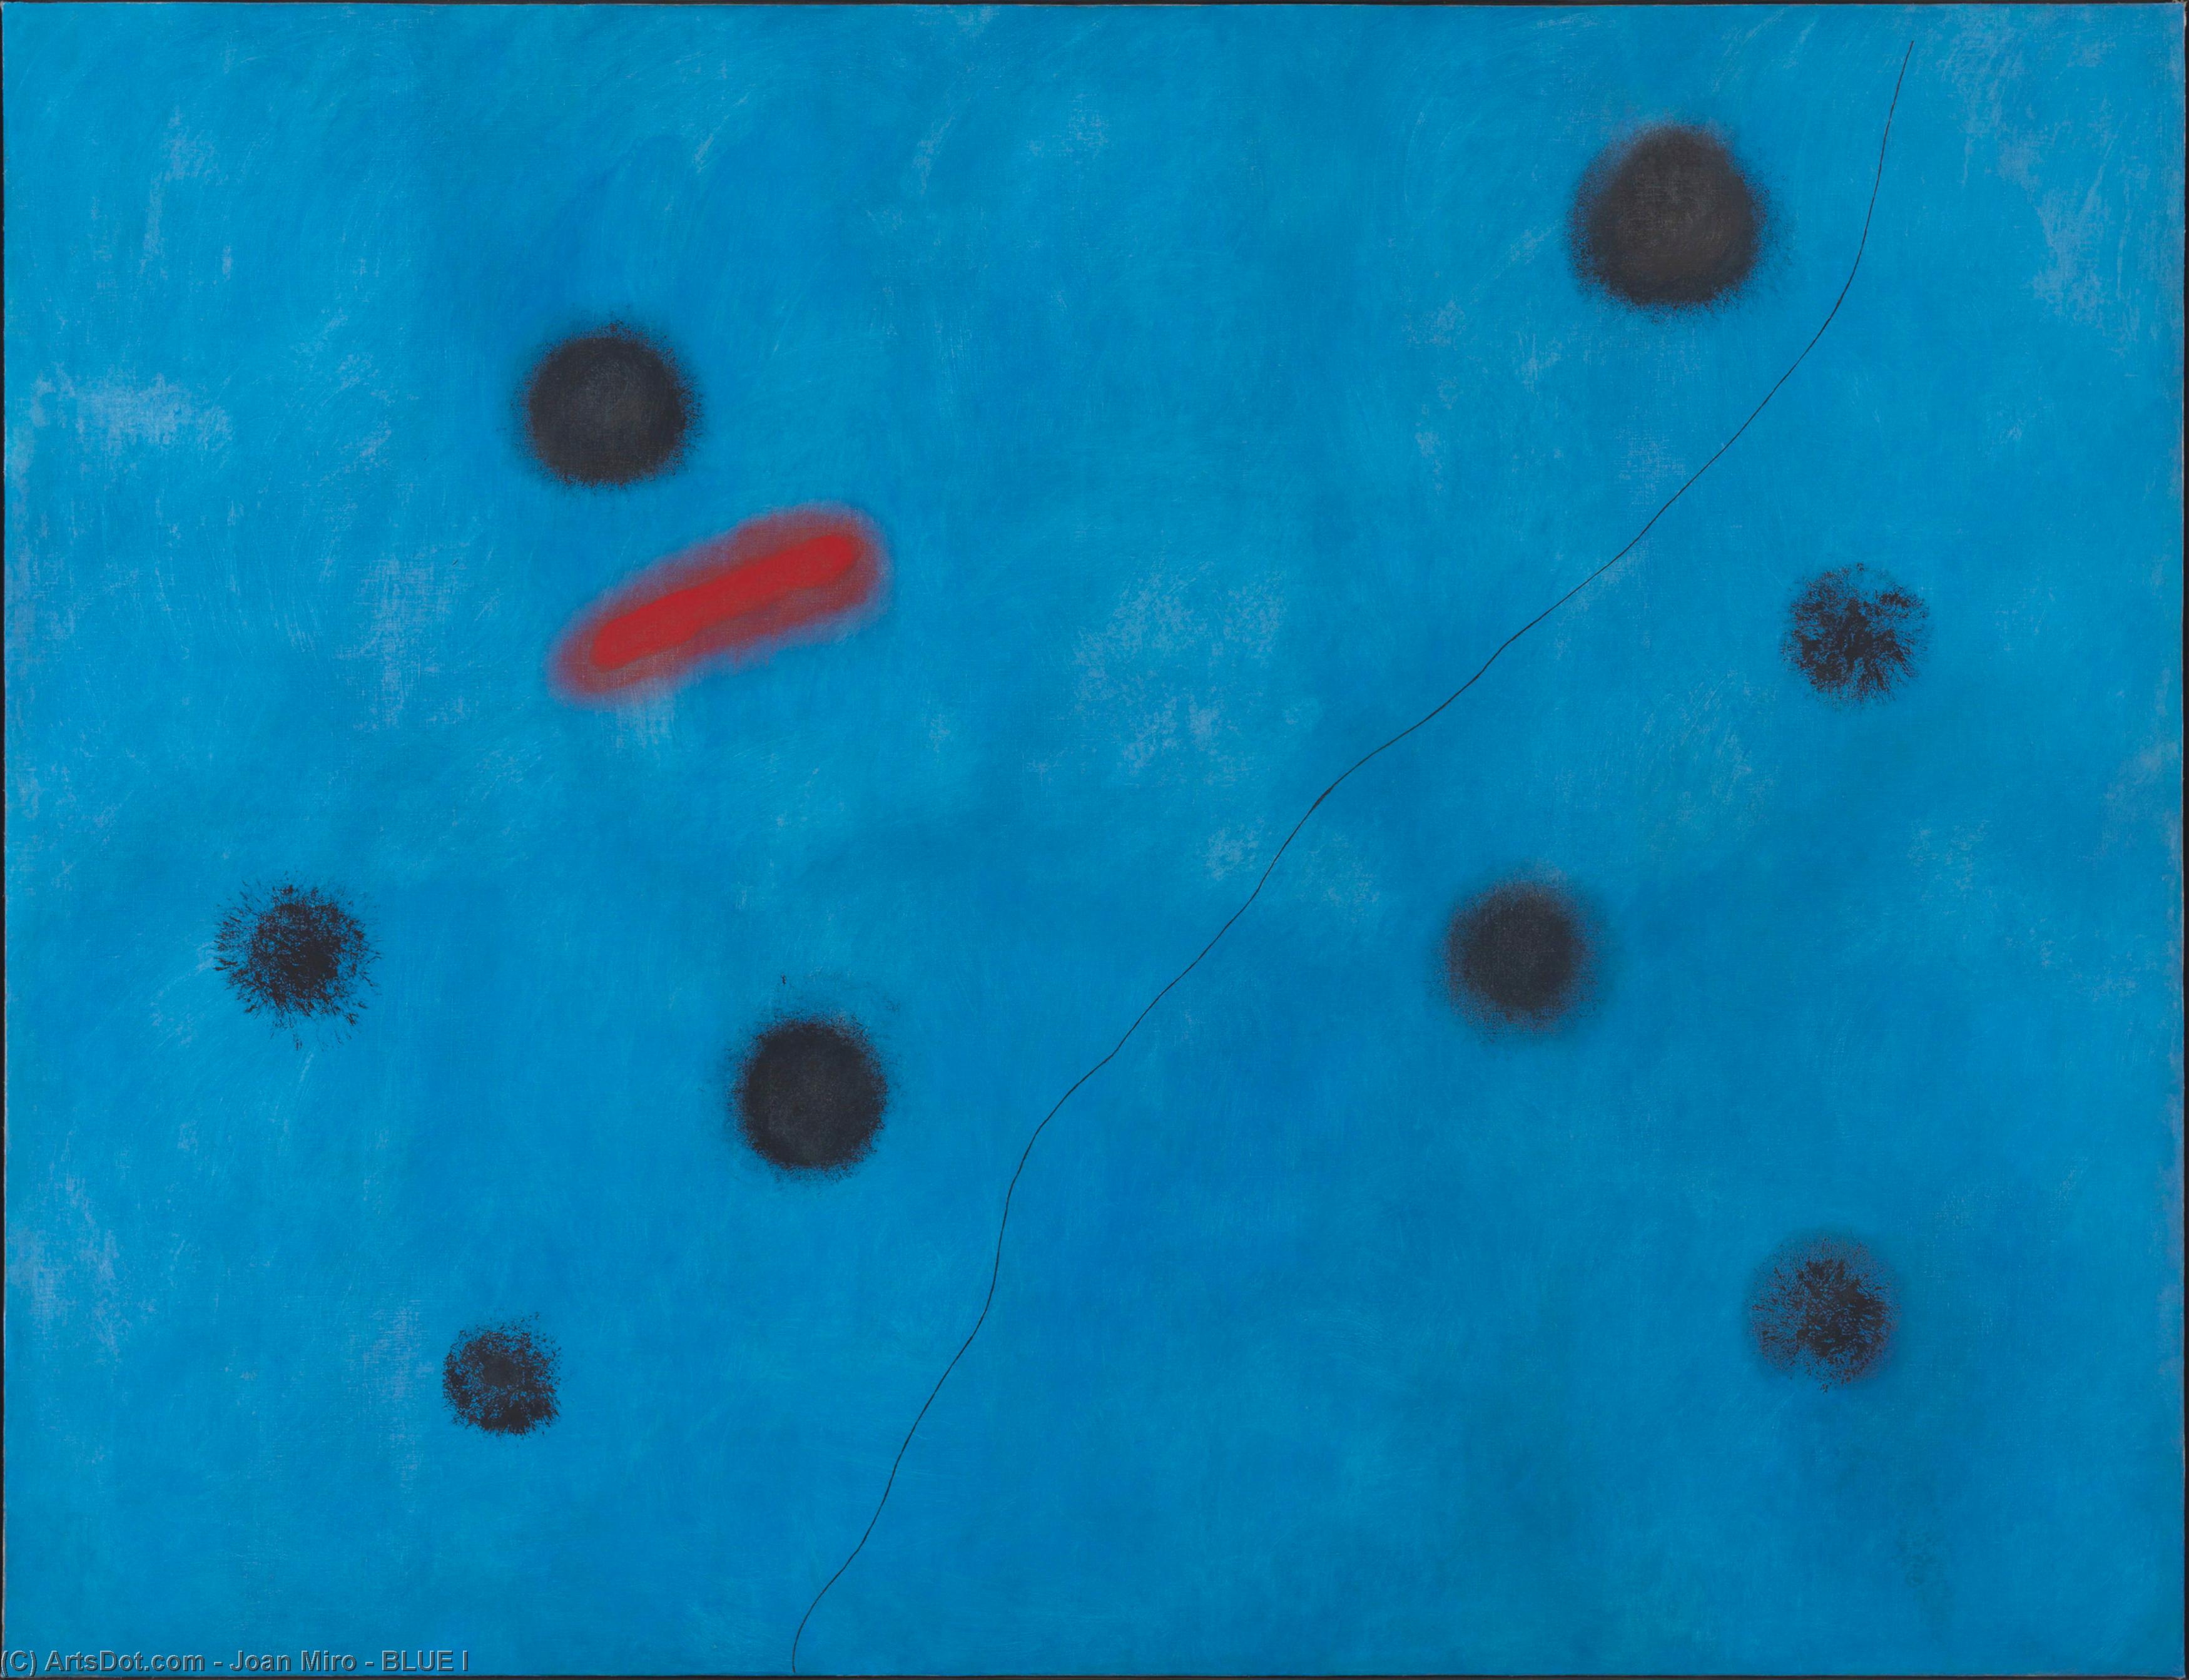 Wikoo.org - موسوعة الفنون الجميلة - اللوحة، العمل الفني Joan Miro - BLUE I